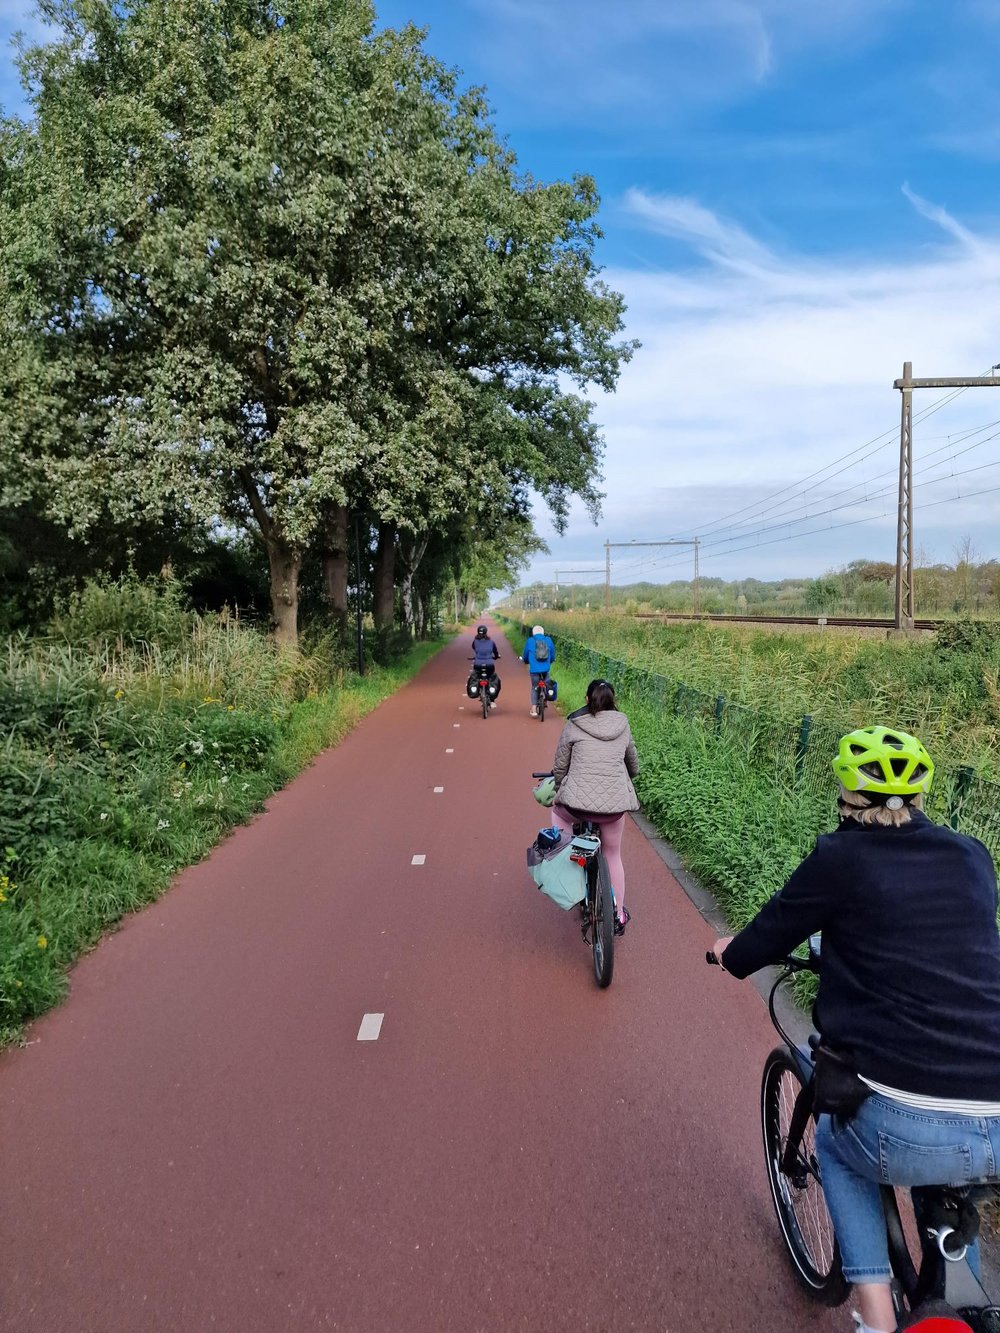 Mitglieder der Kreistagsfraktion fahren in Holland mit ihren Rädern auf einem Radschnellweg entlang einer Bahntrasse, rechts und links breite Grünstreifen, blauer Himmel